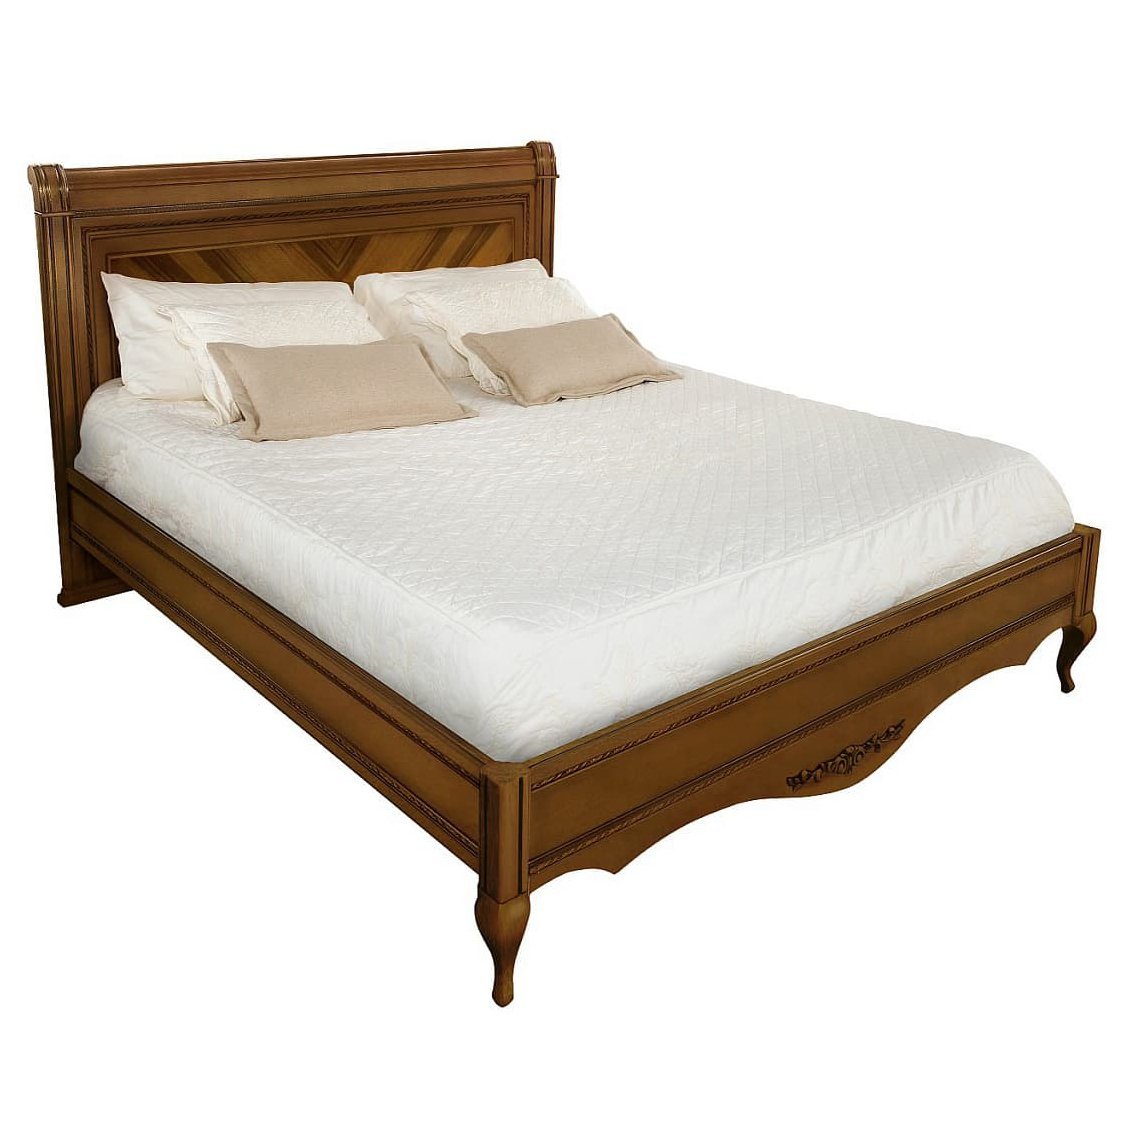 Кровать Timber Неаполь, двуспальная 160x200 см цвет: орех (T-536)T-536